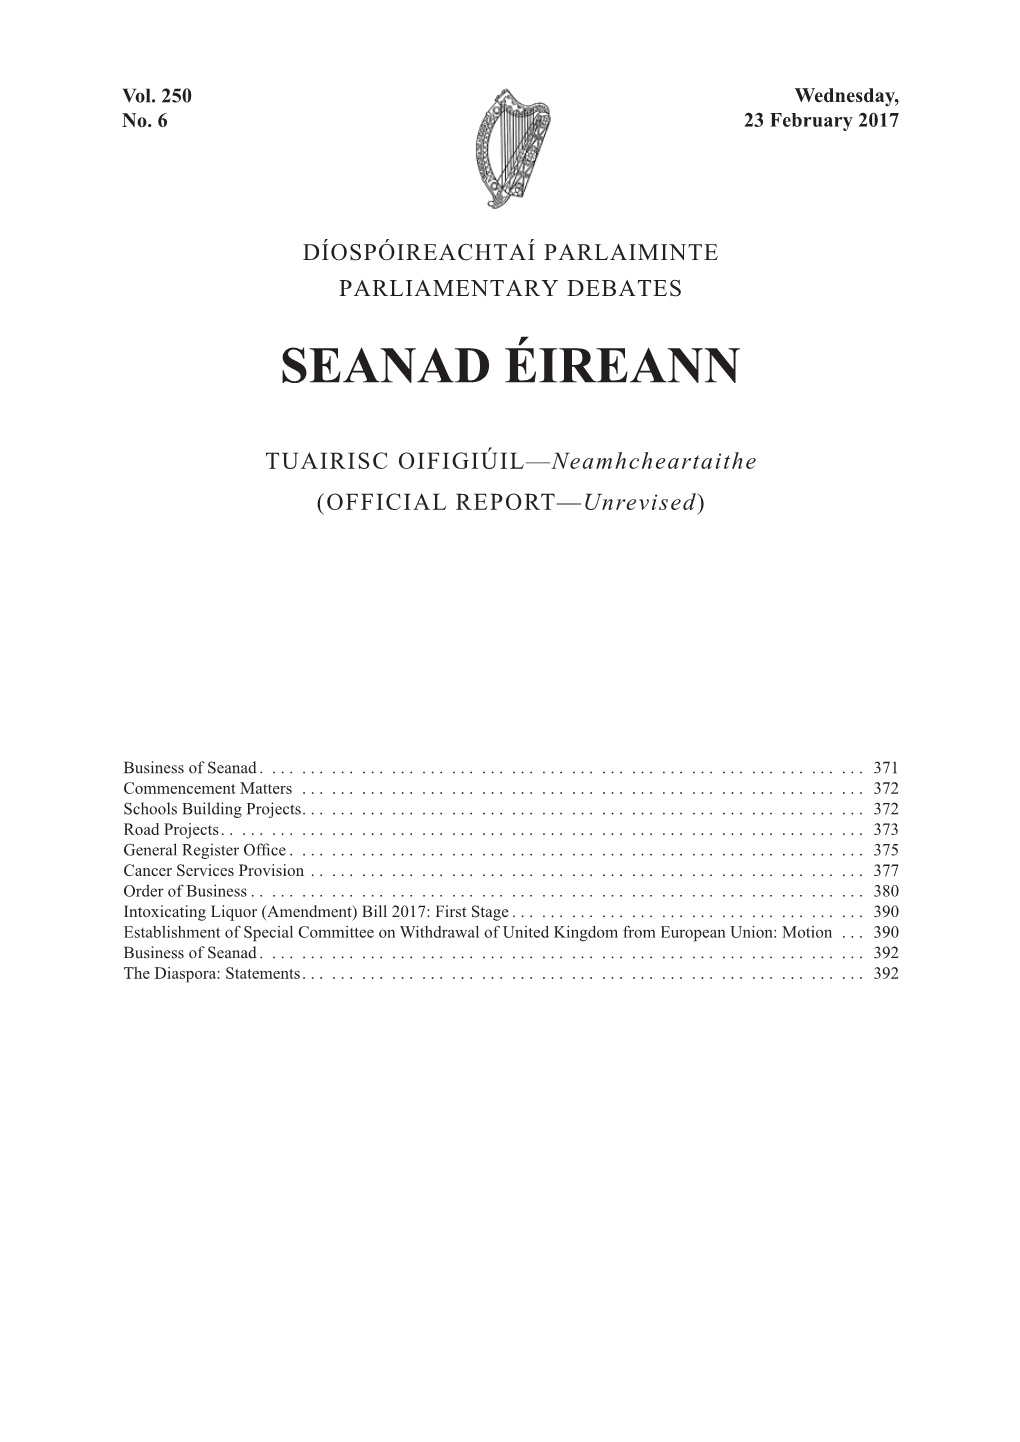 Seanad Éireann